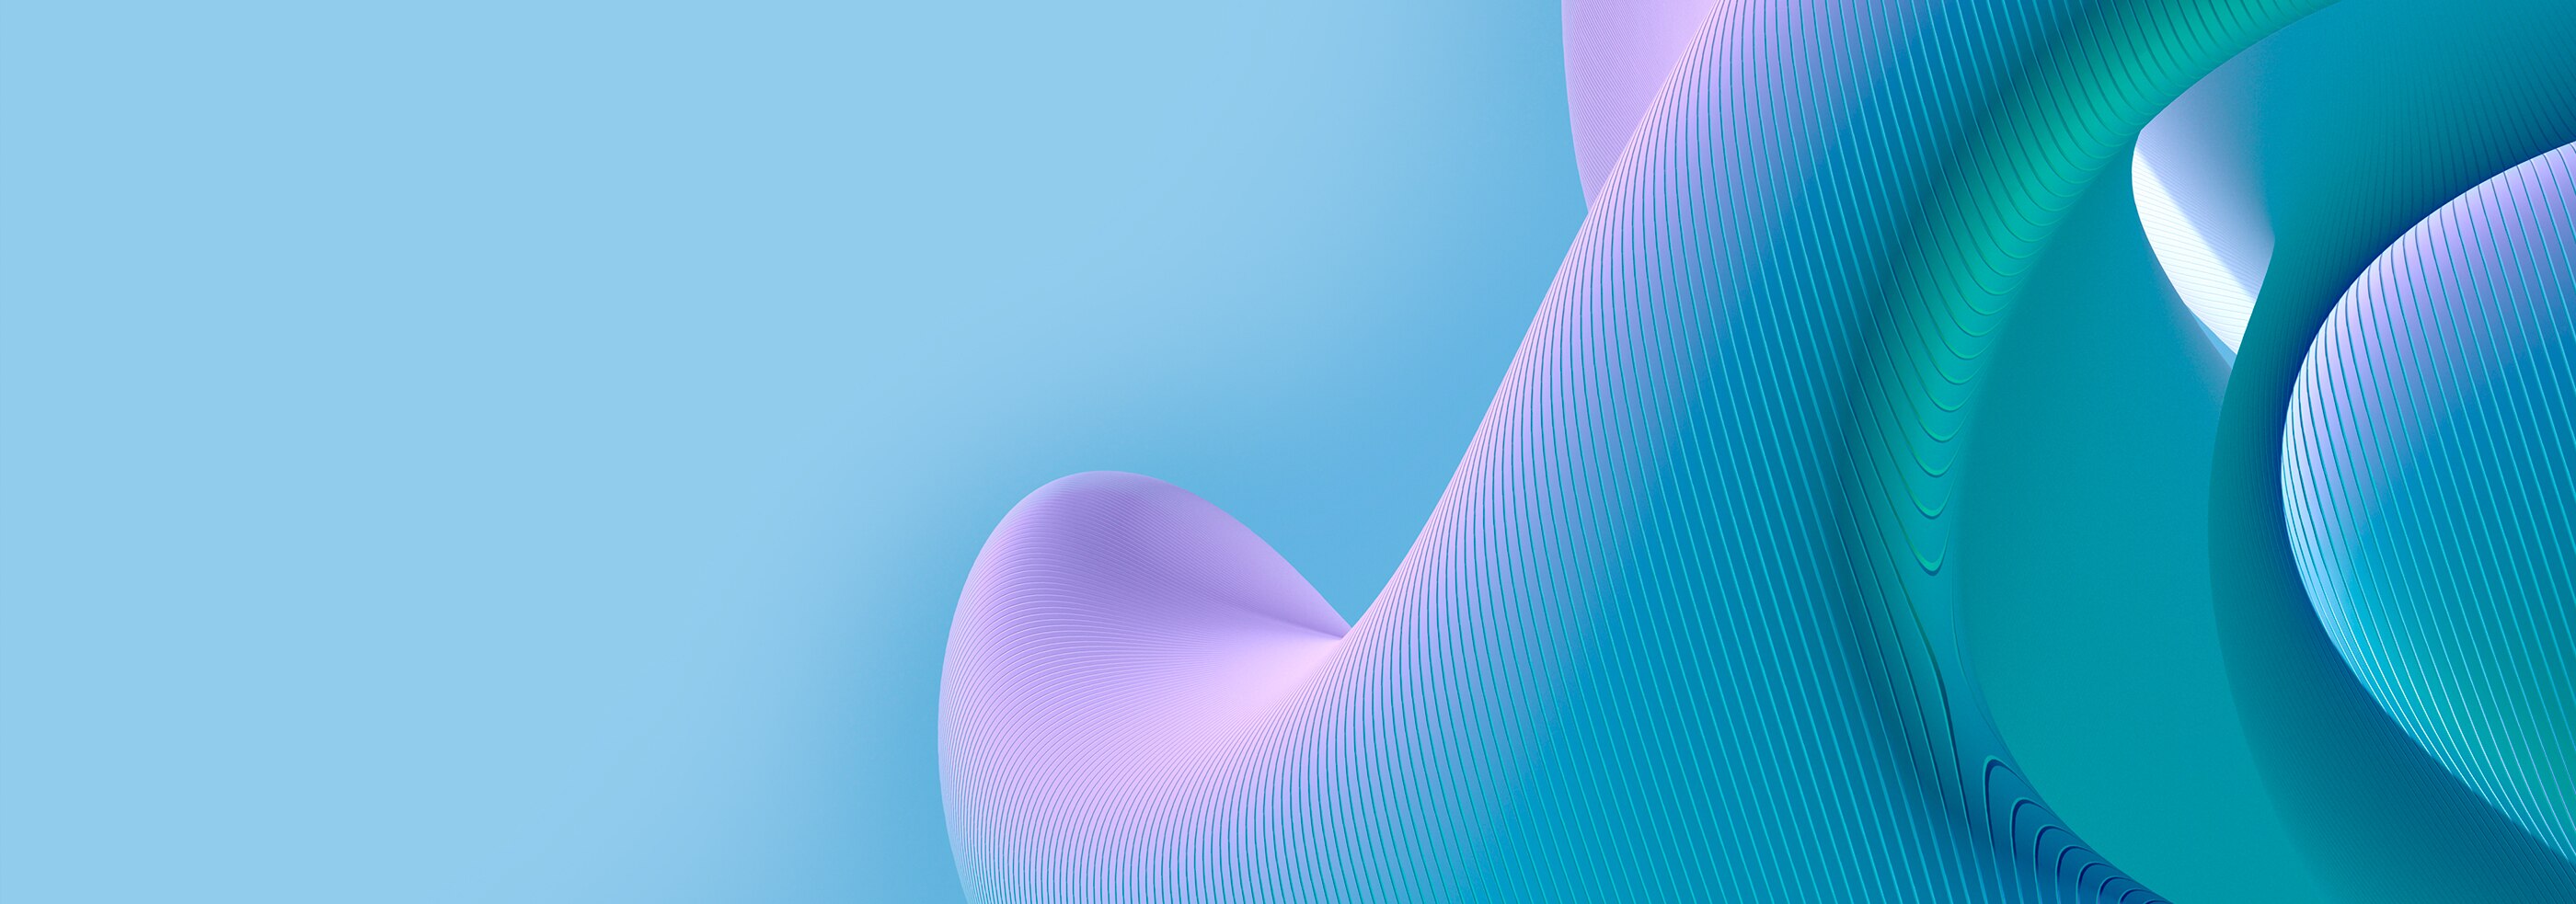 Modello di linee curve 3D su una superficie blu e viola